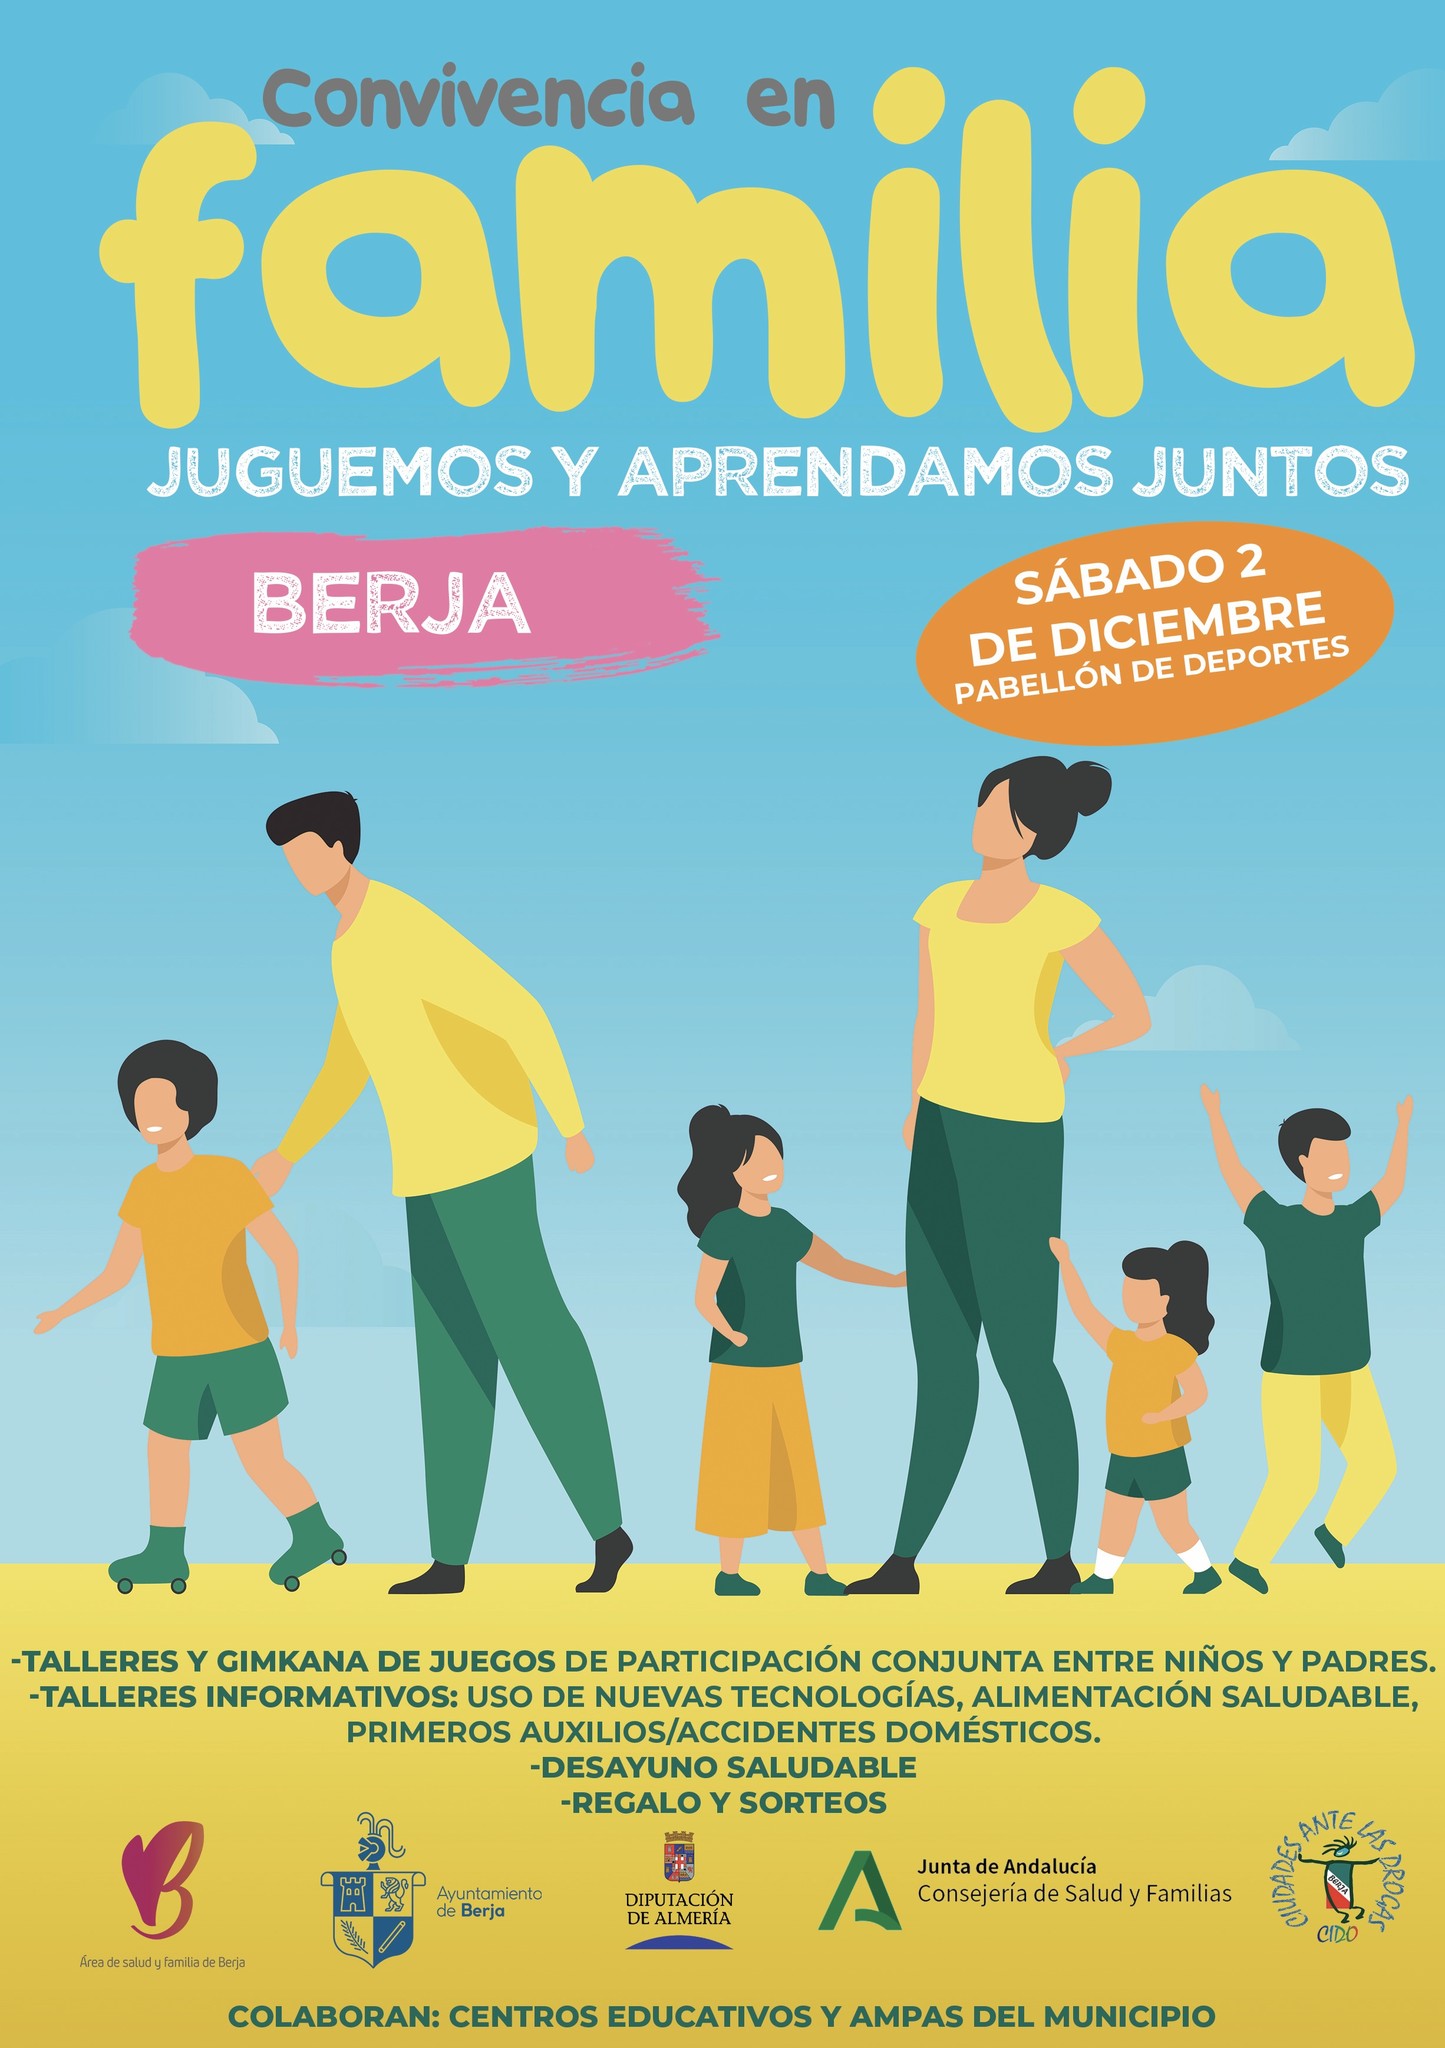 Berja organiza este sábado en el Pabellón una convivencia en familia con motivo del Día Internacional del Niño